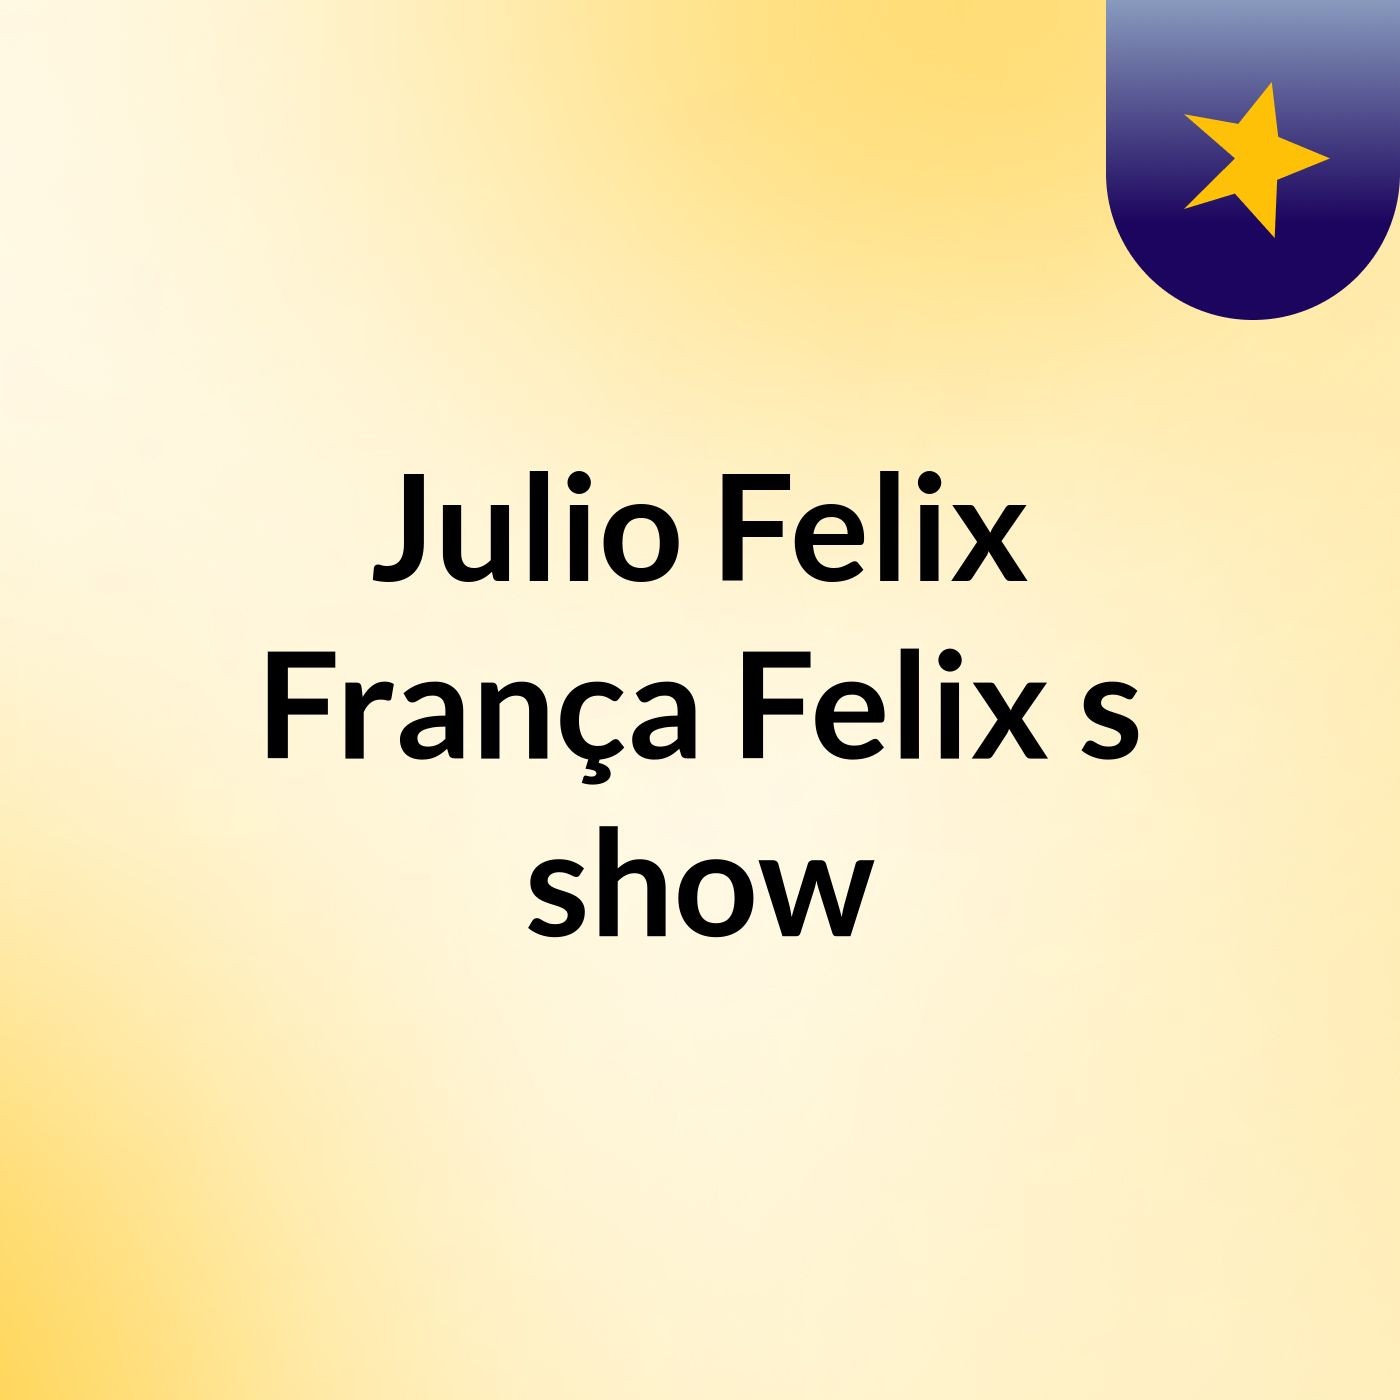 Julio Felix França Felix's show